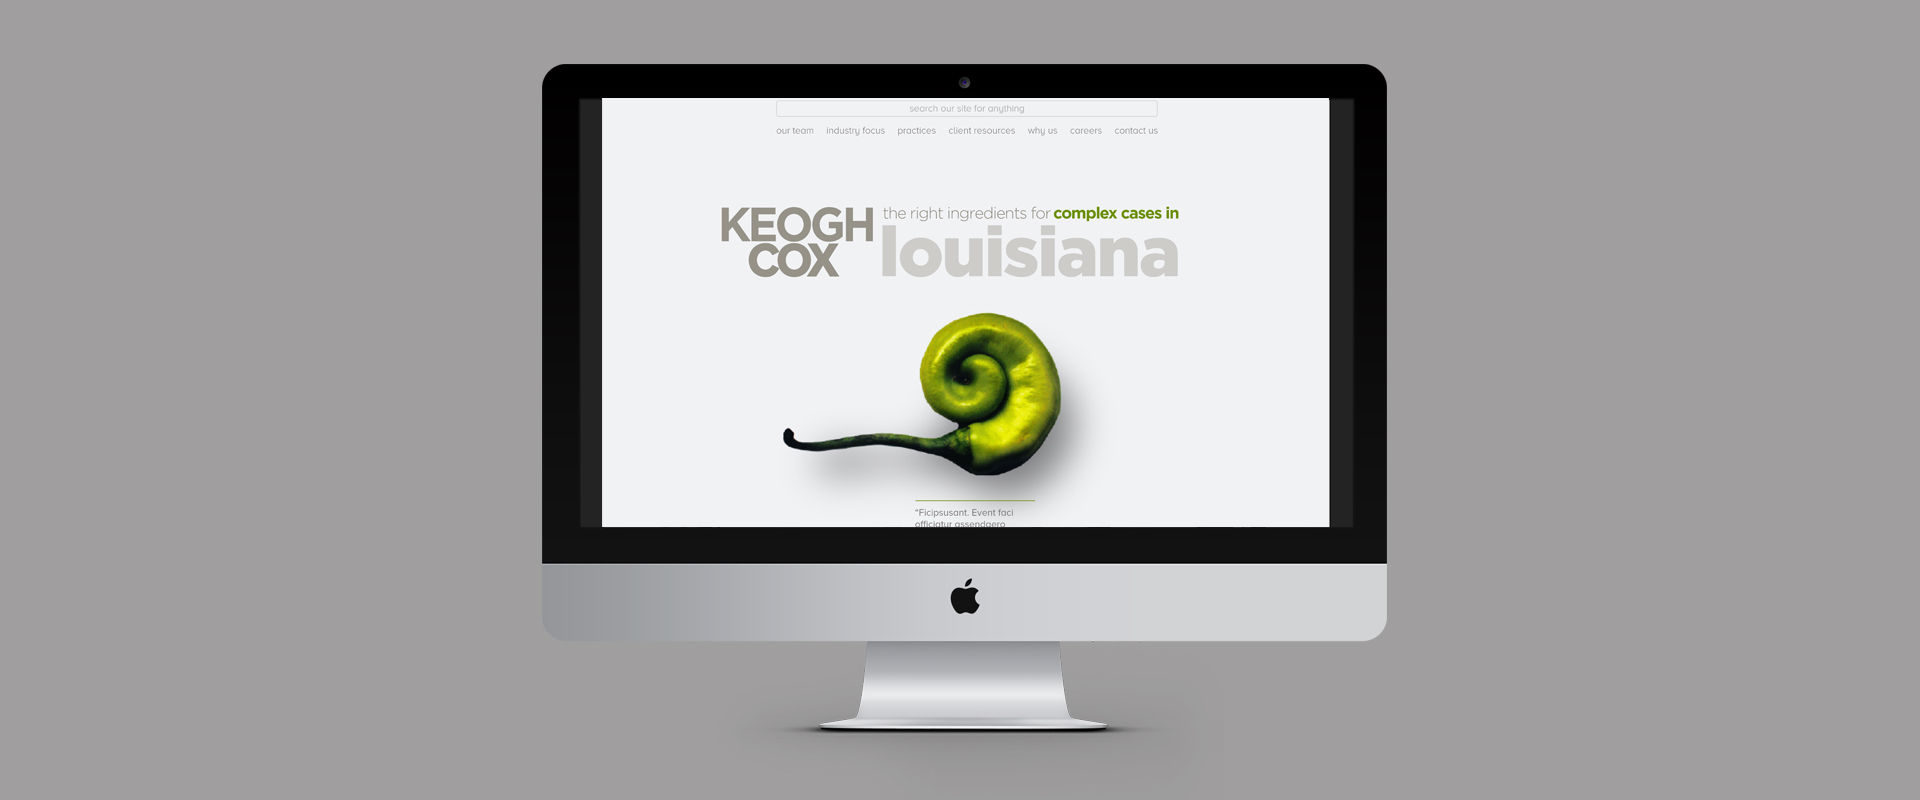 Keogh Cox Homepage Desktop